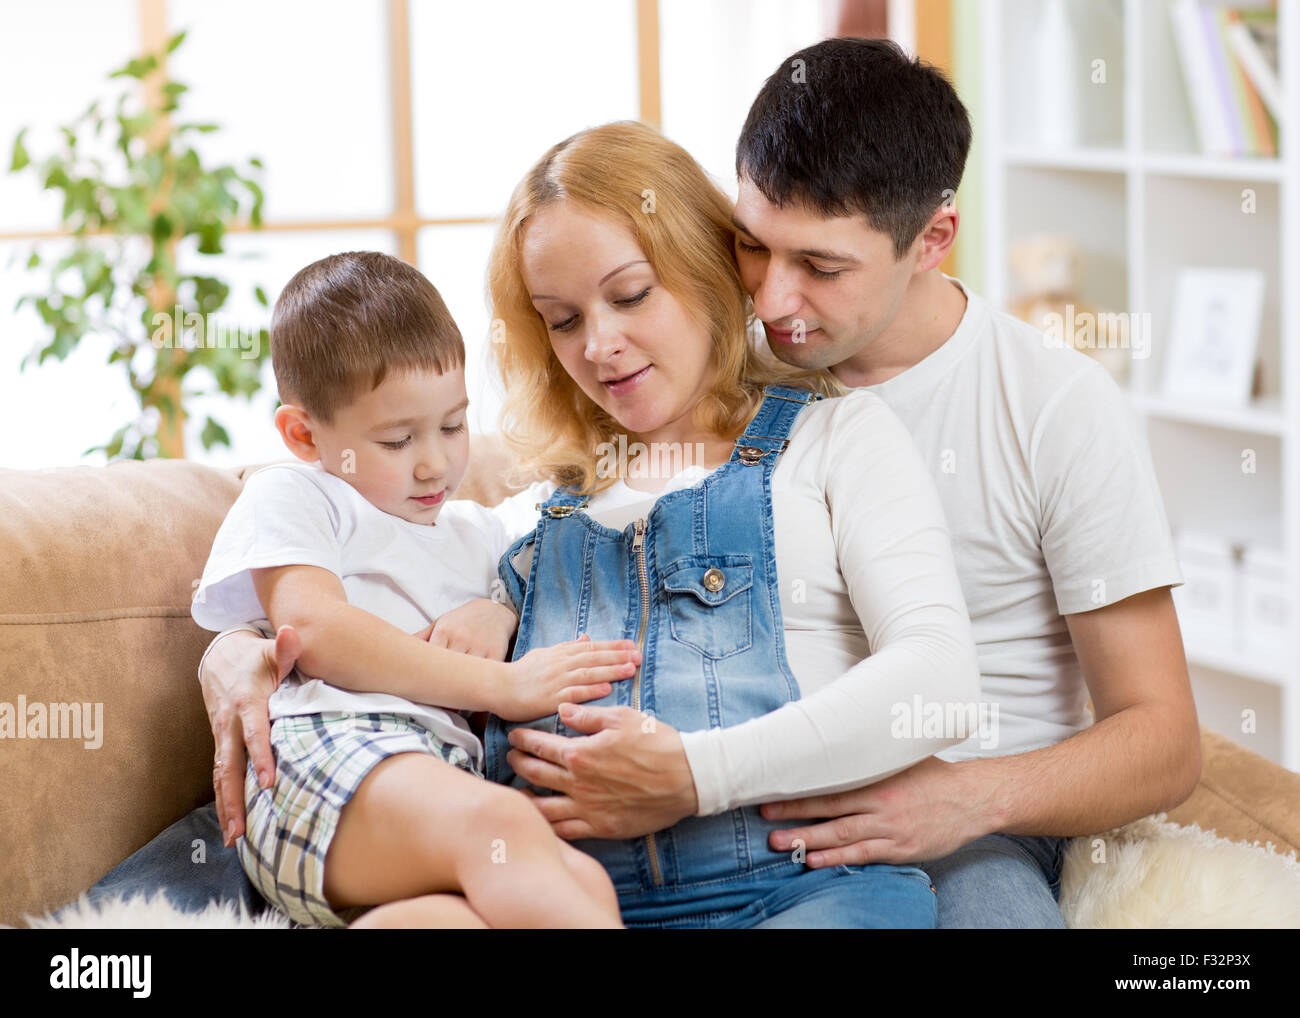 Famiglia - madre, padre e ragazzino aspettano di nuovo bambino Foto Stock